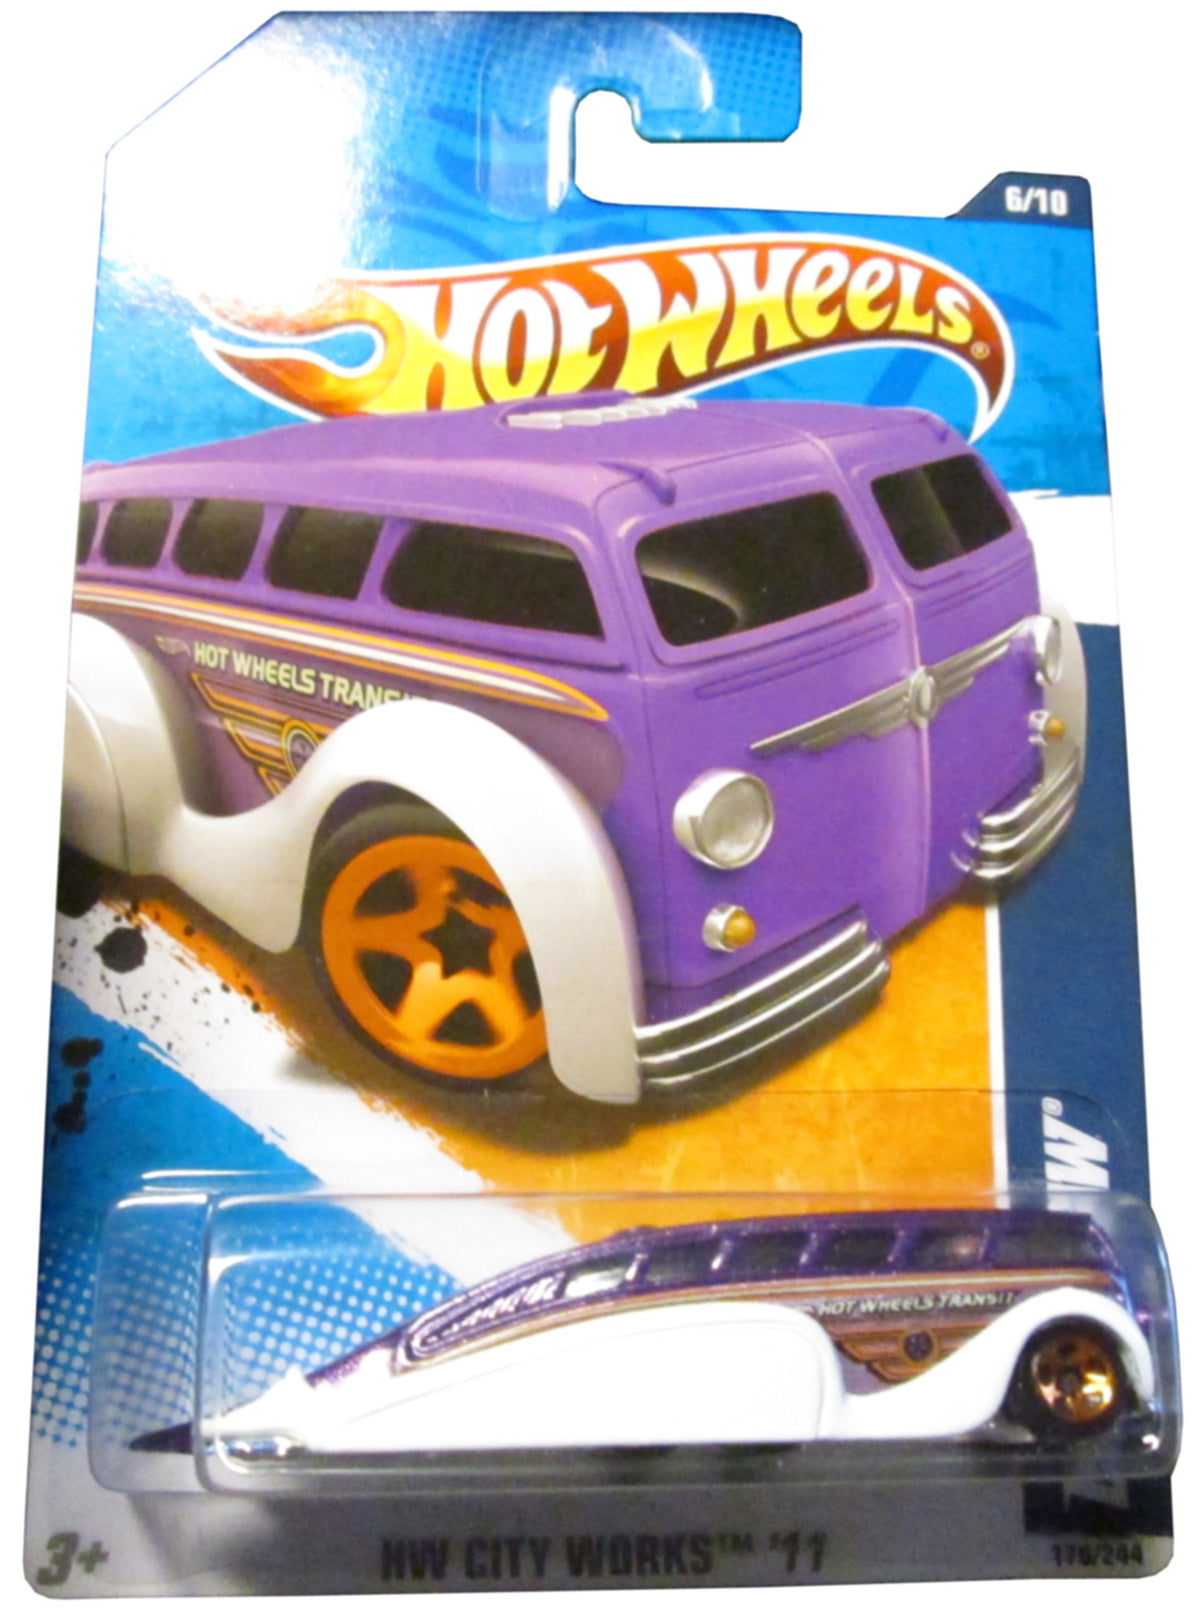 2011 Hot Wheels HW City Works Low Flow Purple/White #176/244